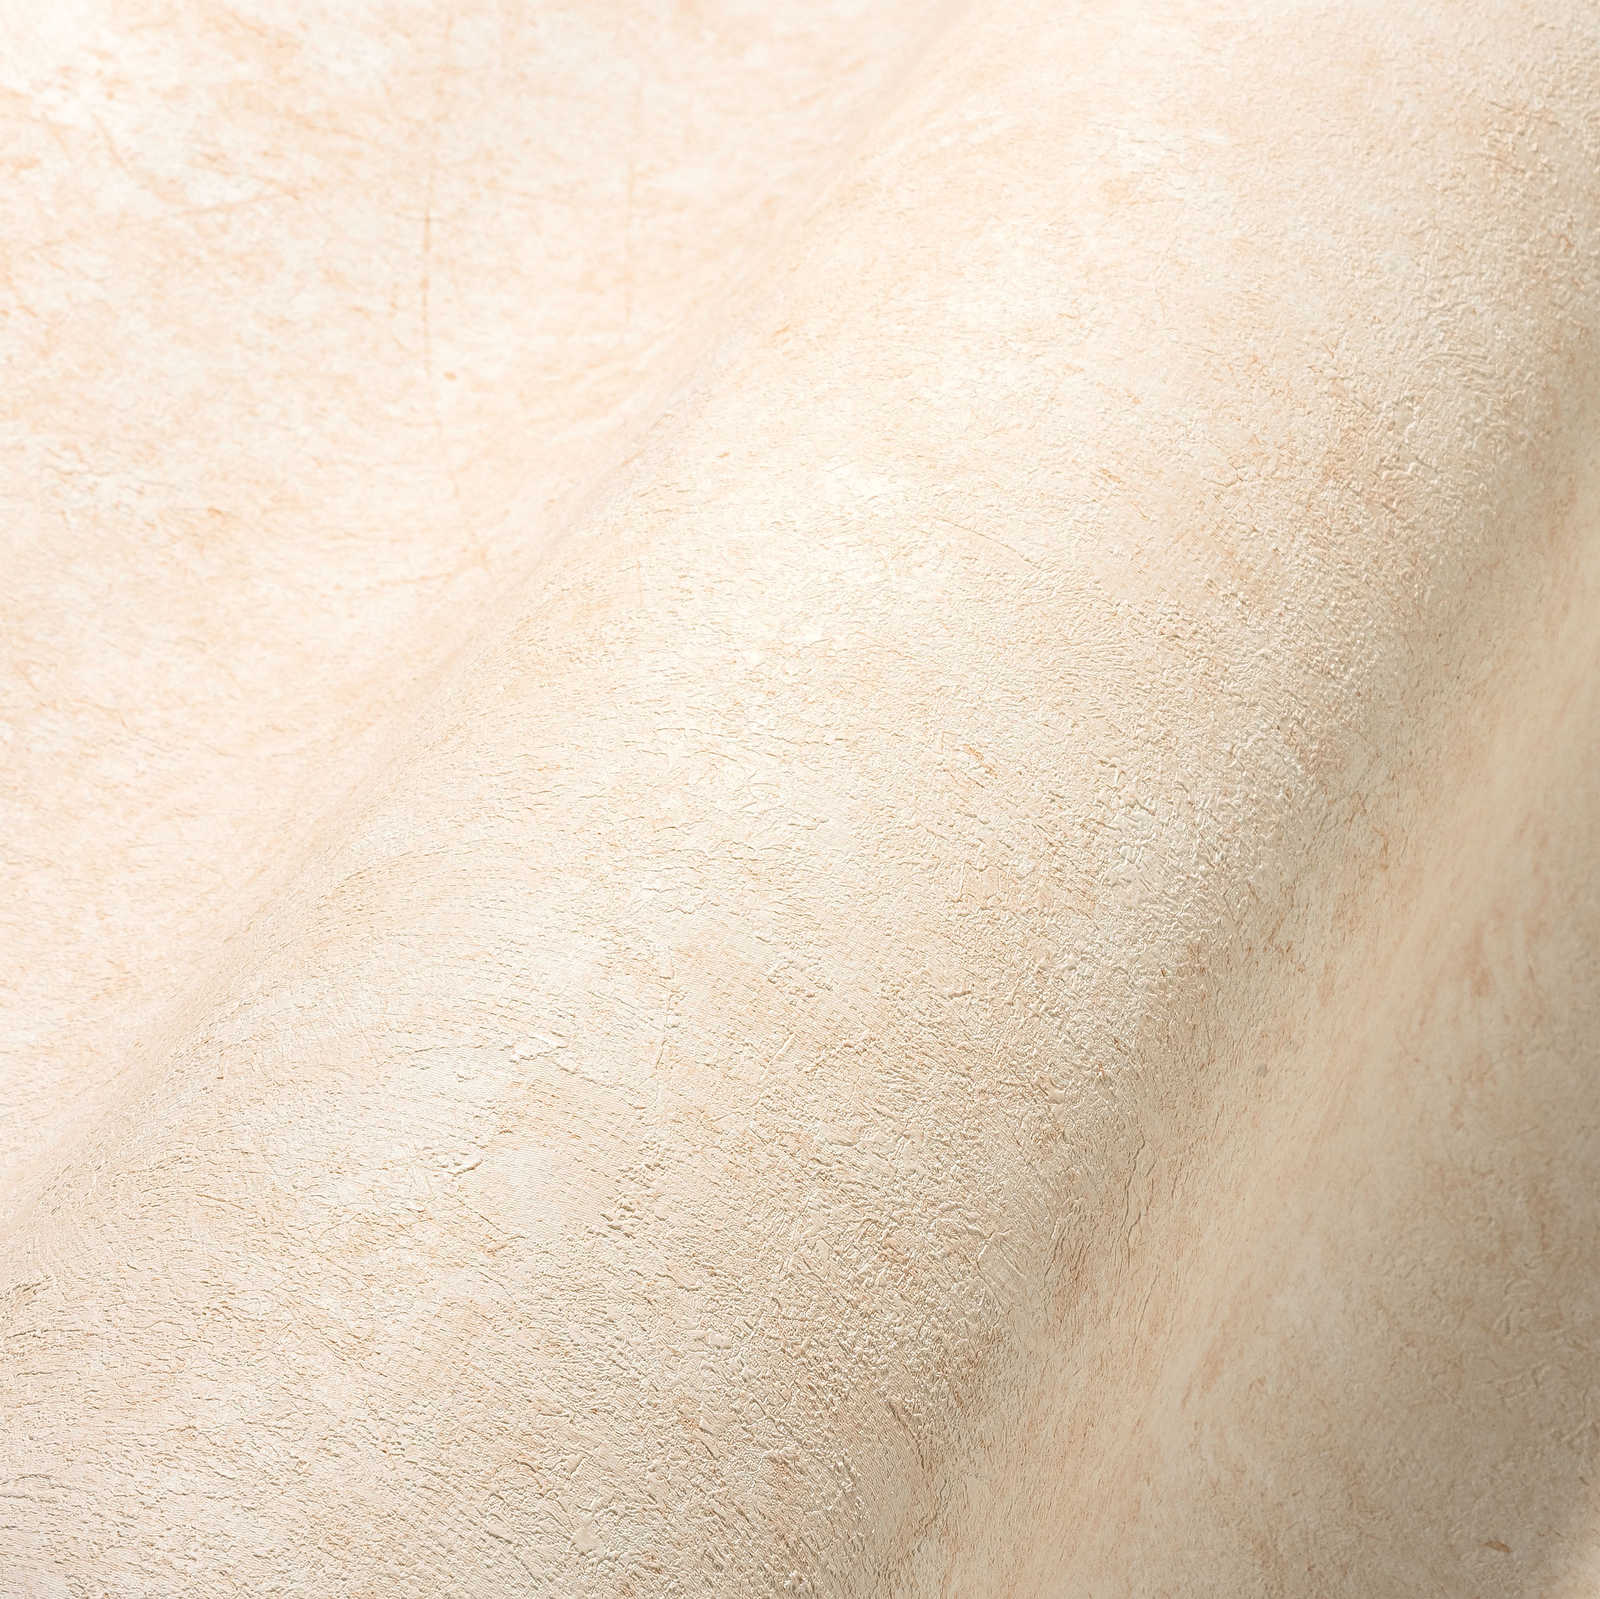             Textured wallpaper in plain subtle shades - cream, beige
        